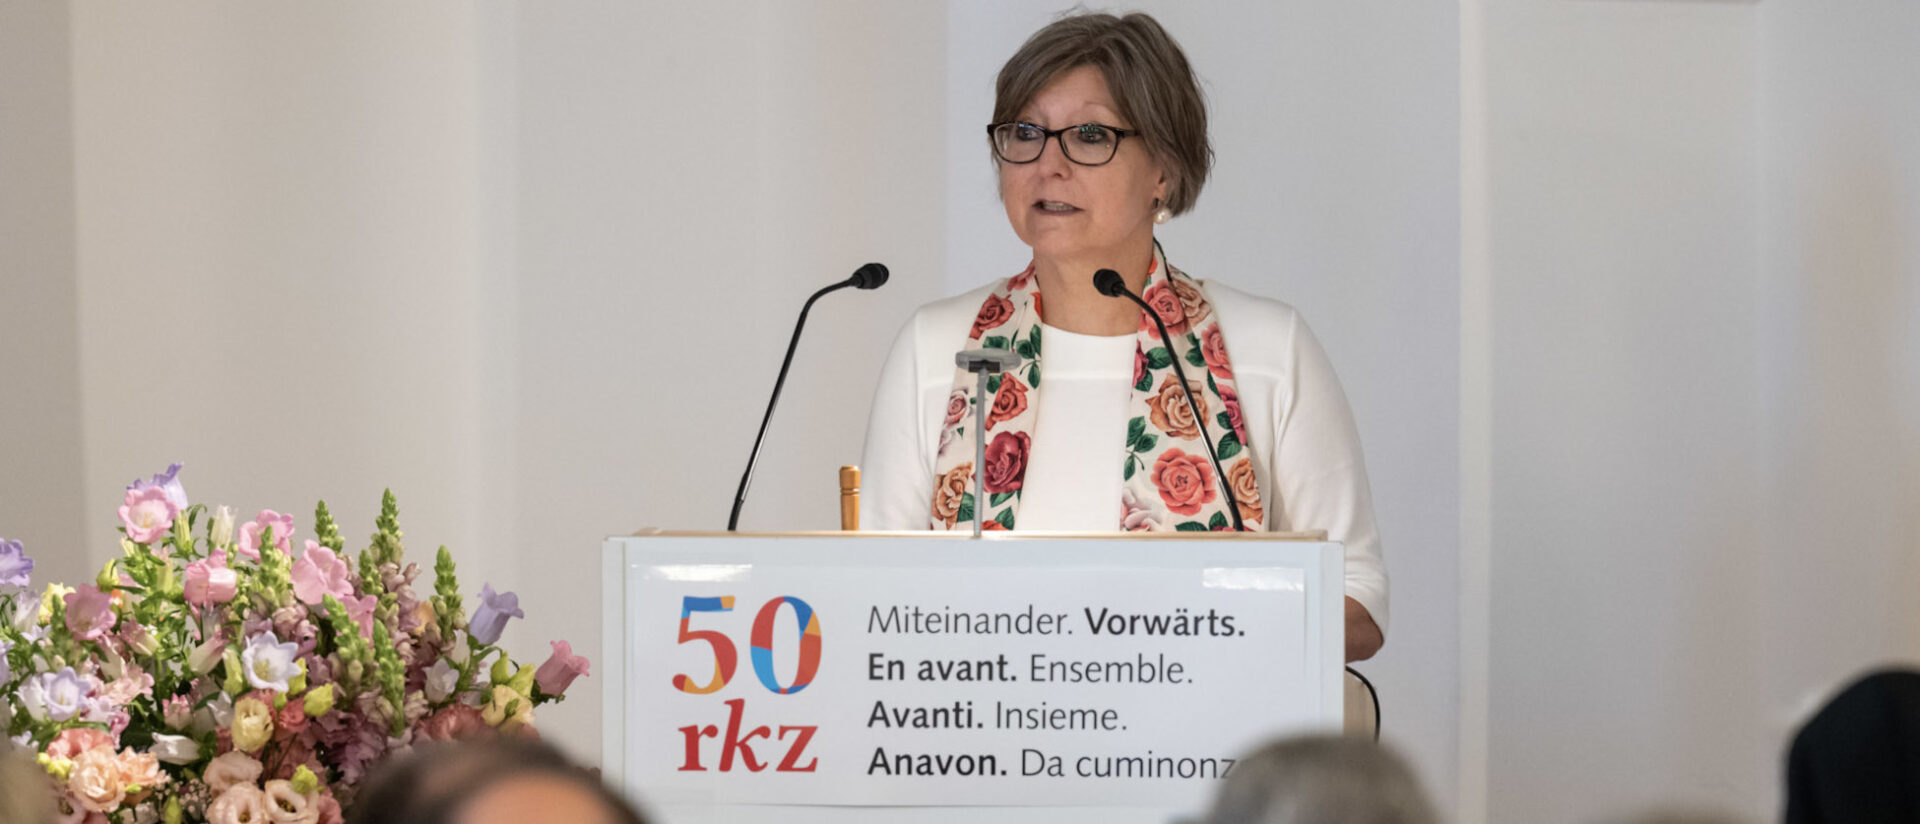 Renata Asal-Steger bei der 50-Jahrfeier.